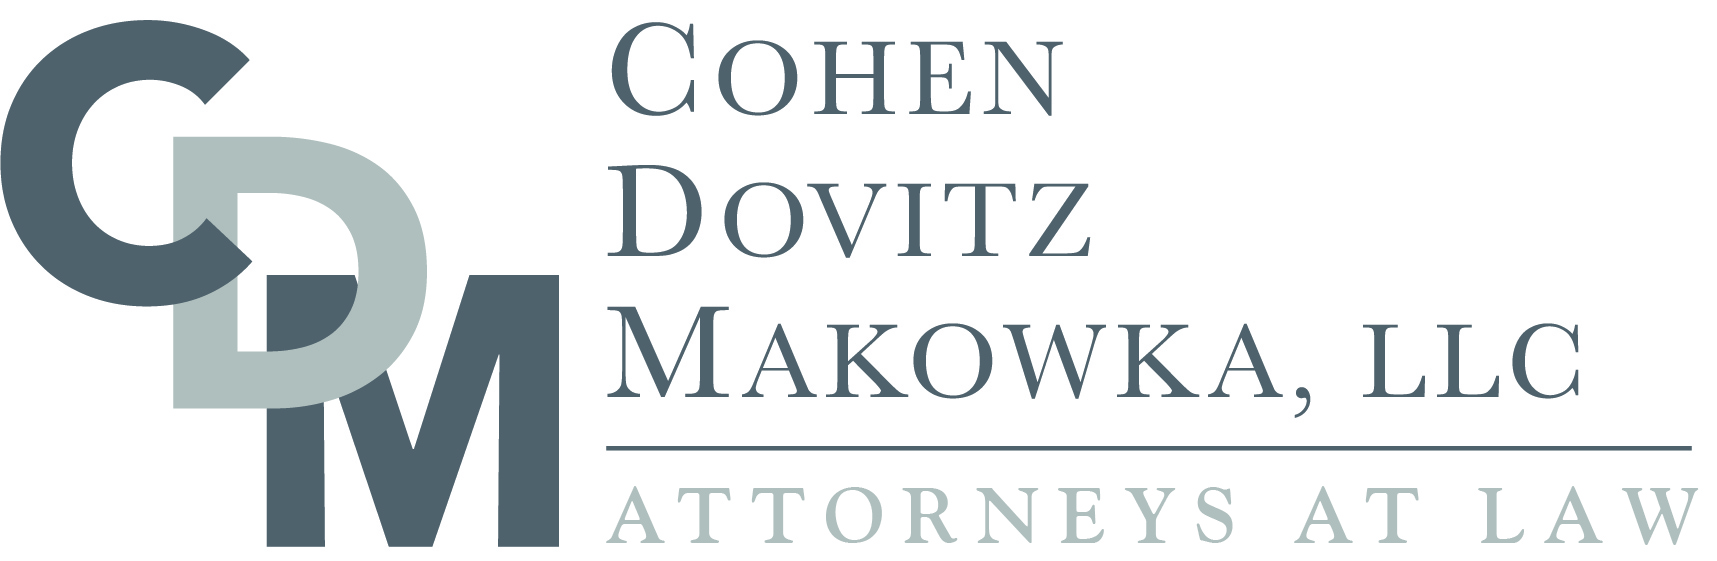 Cohen Dovitz Makowka, LLC